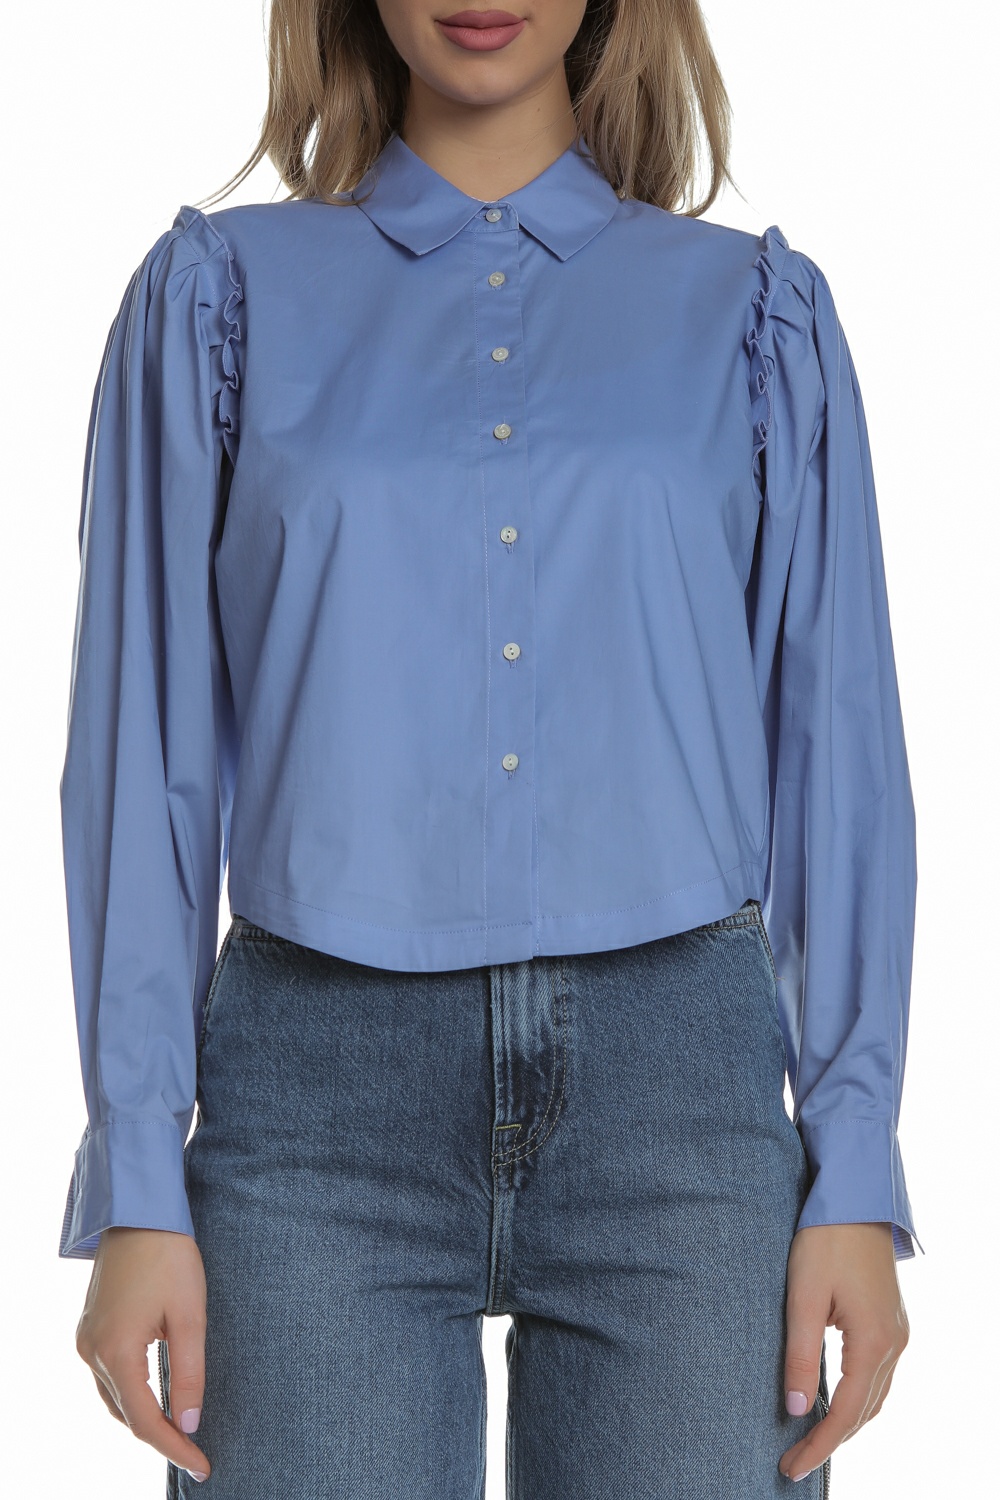 SCOTCH & SODA SCOTCH & SODA - Γυναικείο πουκάμισο cropped SCOTCH & SODA γαλάζιο